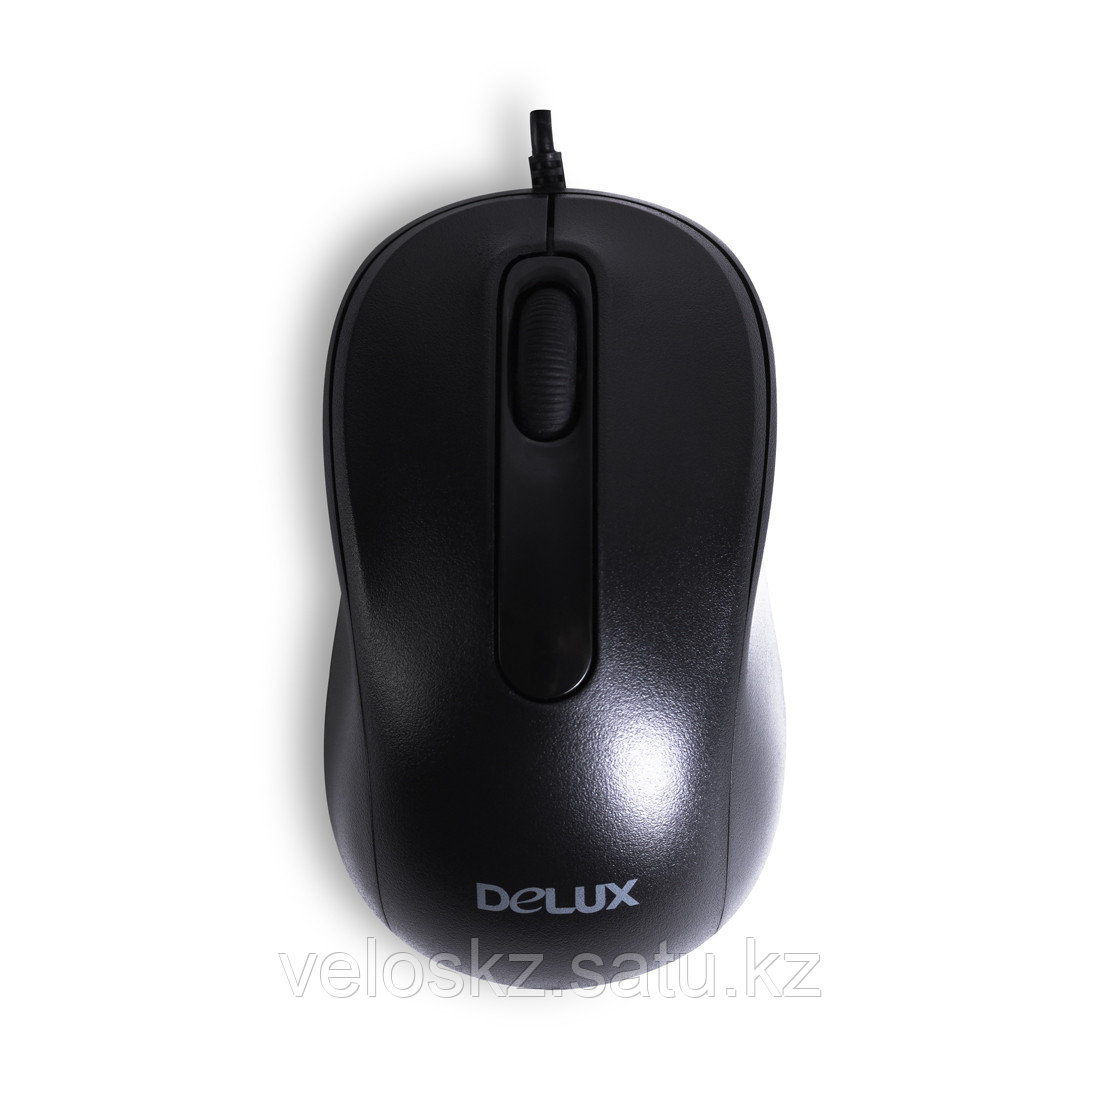 Мышь, Delux, DLM-109OUB, Оптическая, USB, 1000 dpi, Длина кабеля 1,6м, Чёрный